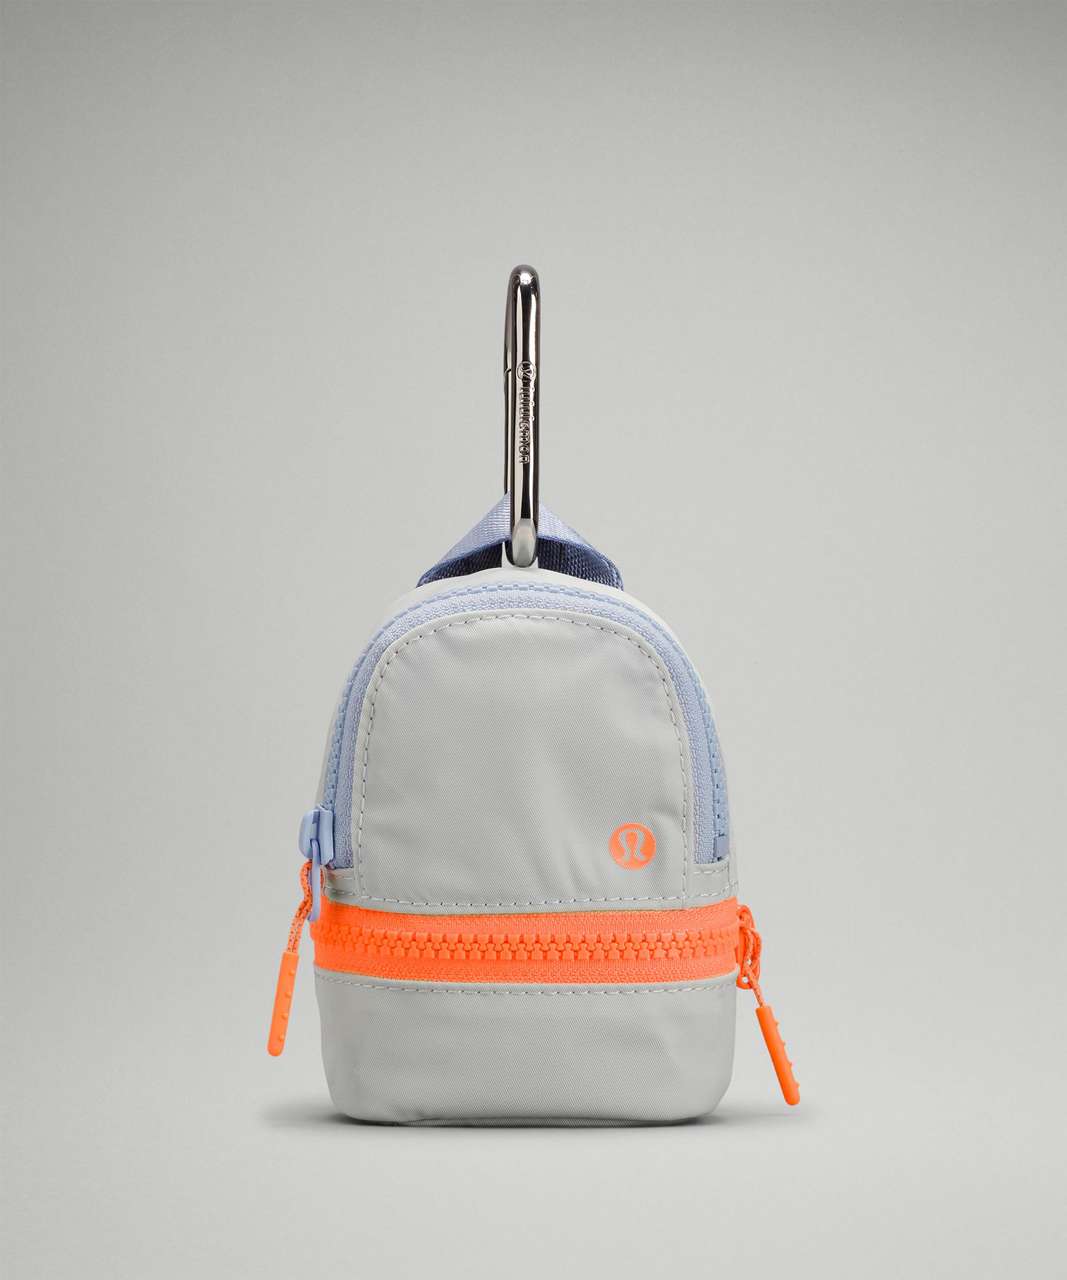 Lululemon City Adventurer Backpack *Nano - Vapor / Blue Linen / Highlight Orange